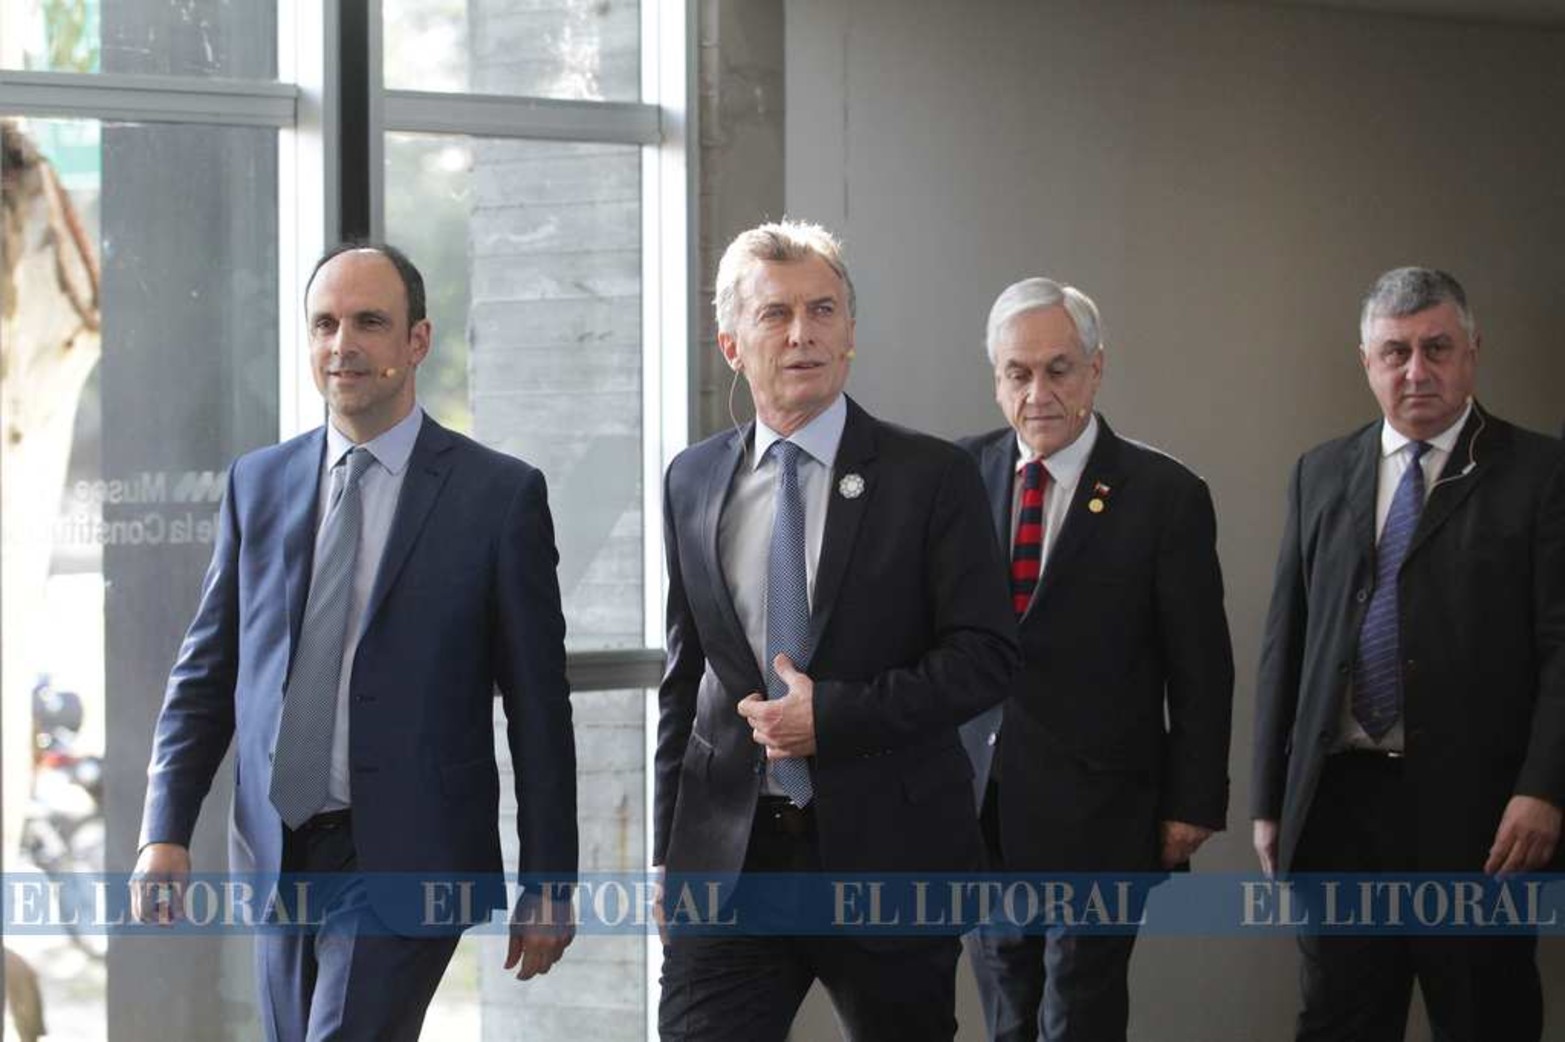 En el Museo de la Consitución, el intendente anfitrión José Corral acompaña a los presidentes Macri y Piñera (Chile).